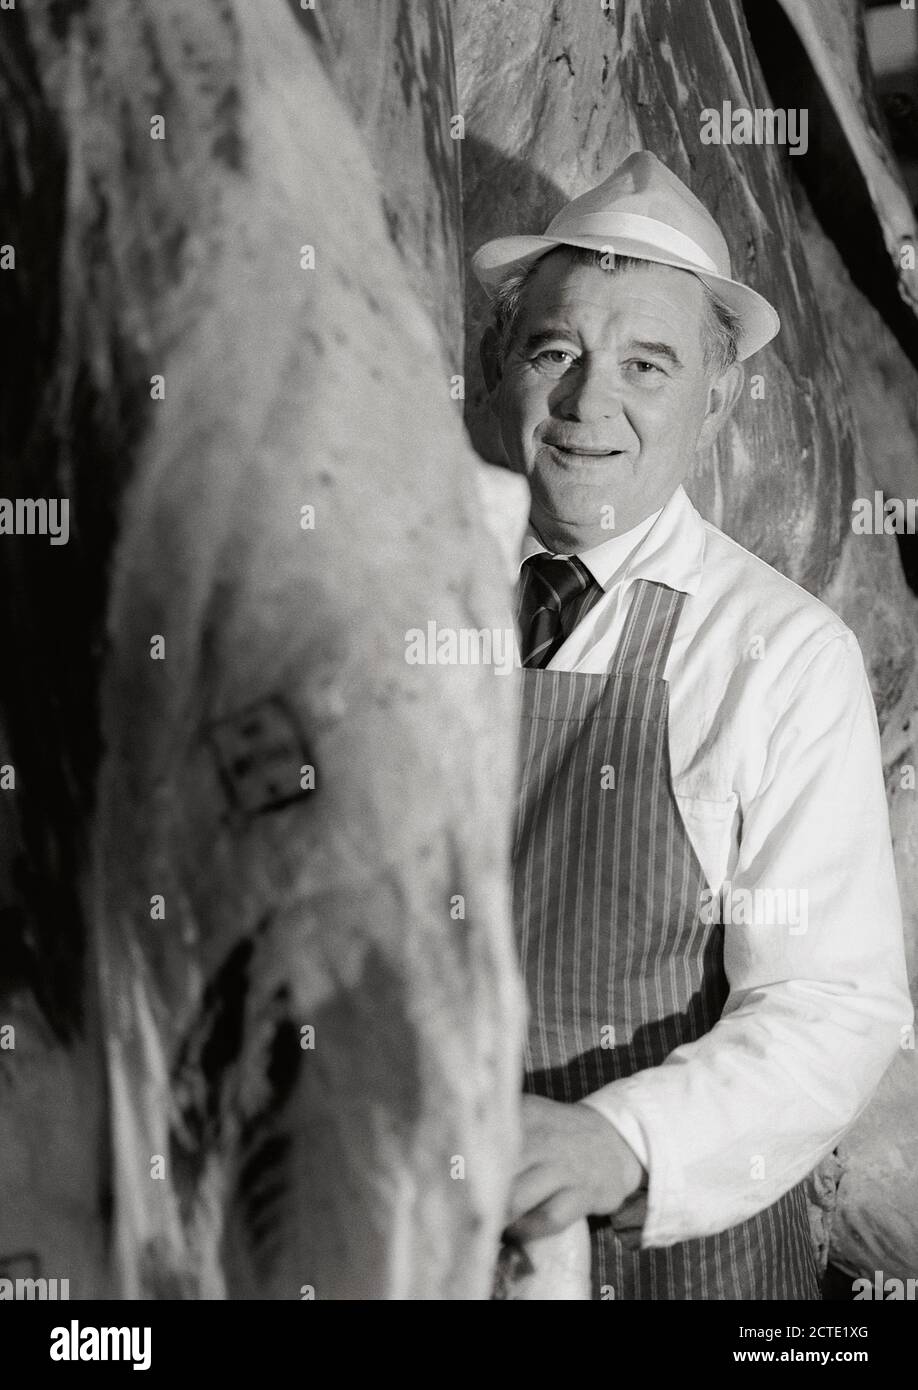 Carnicero de pie entre la carne picada - imagen histórica de la década de 1990 Foto de stock